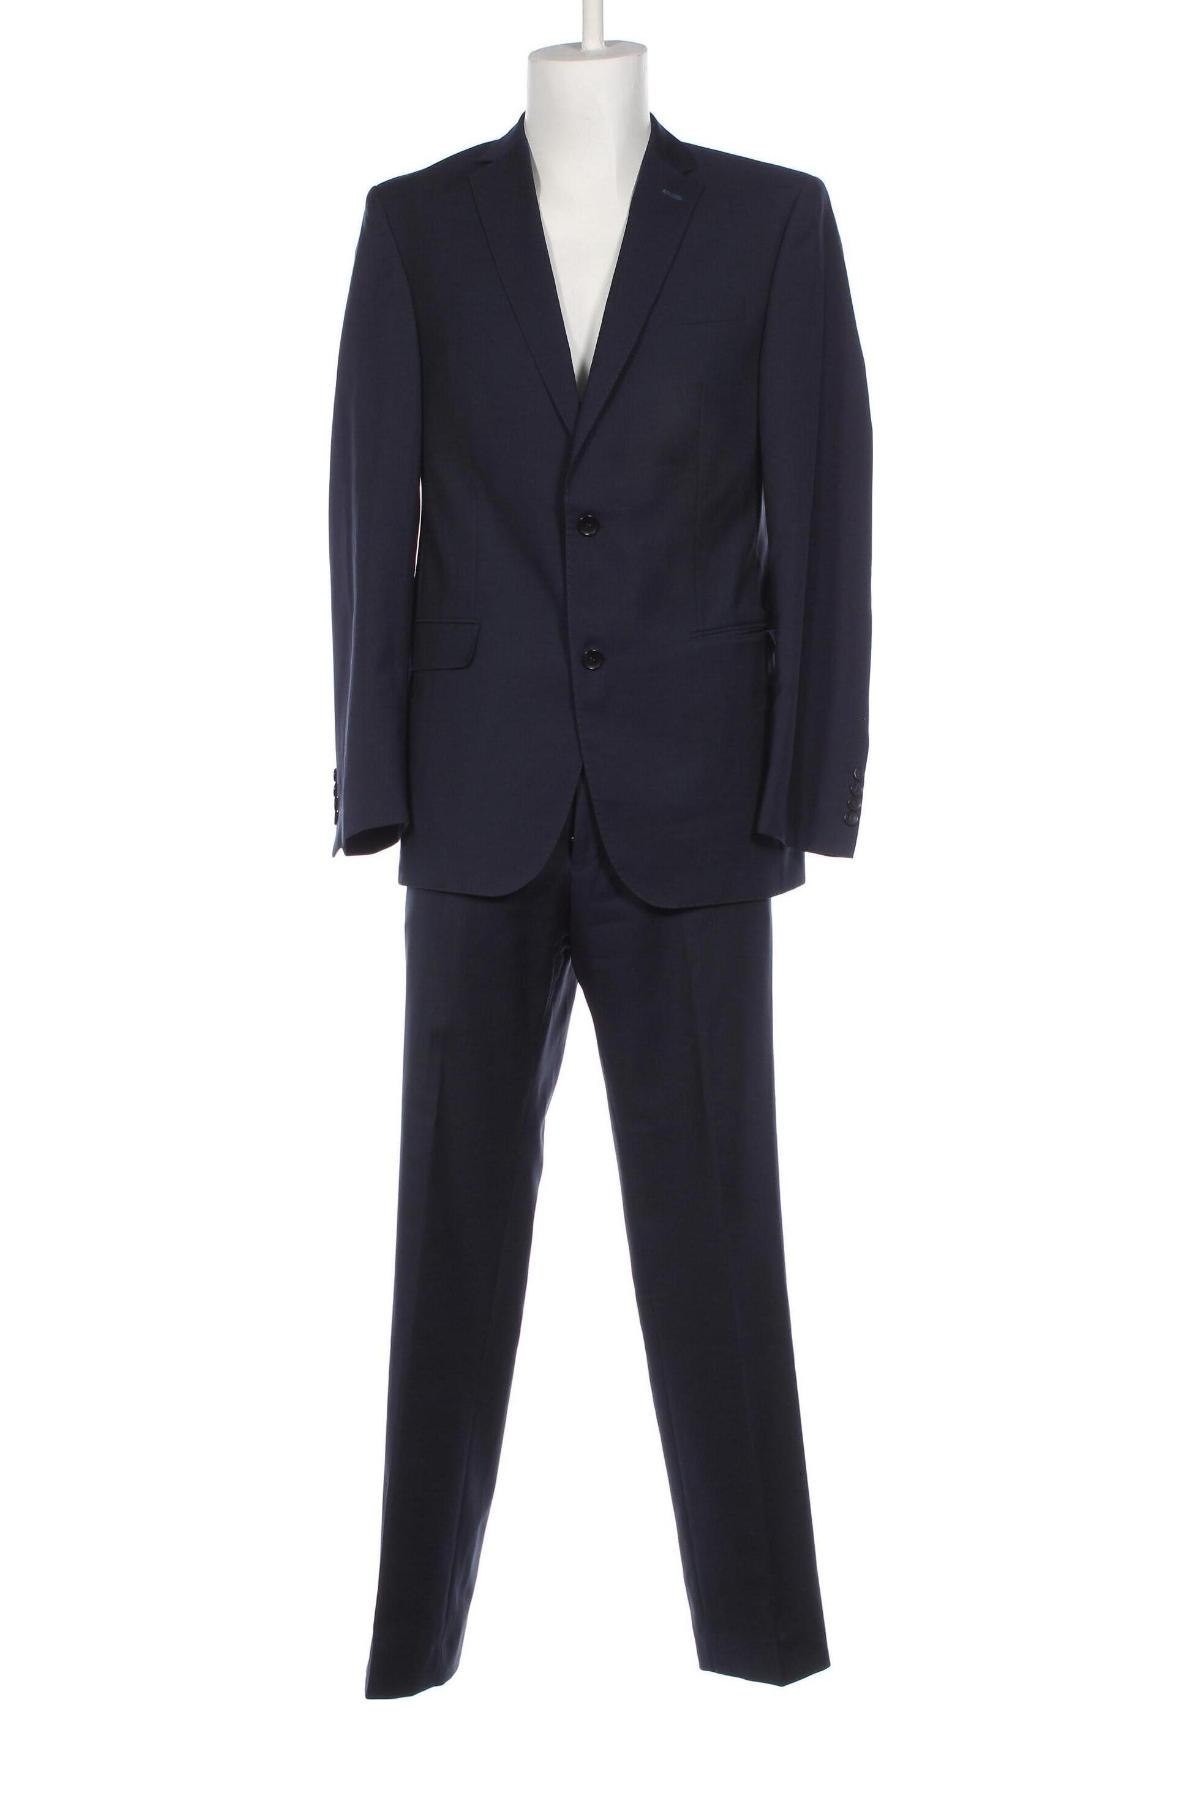 Ανδρικό κοστούμι Carl Gross, Μέγεθος L, Χρώμα Μπλέ, Τιμή 60,00 €